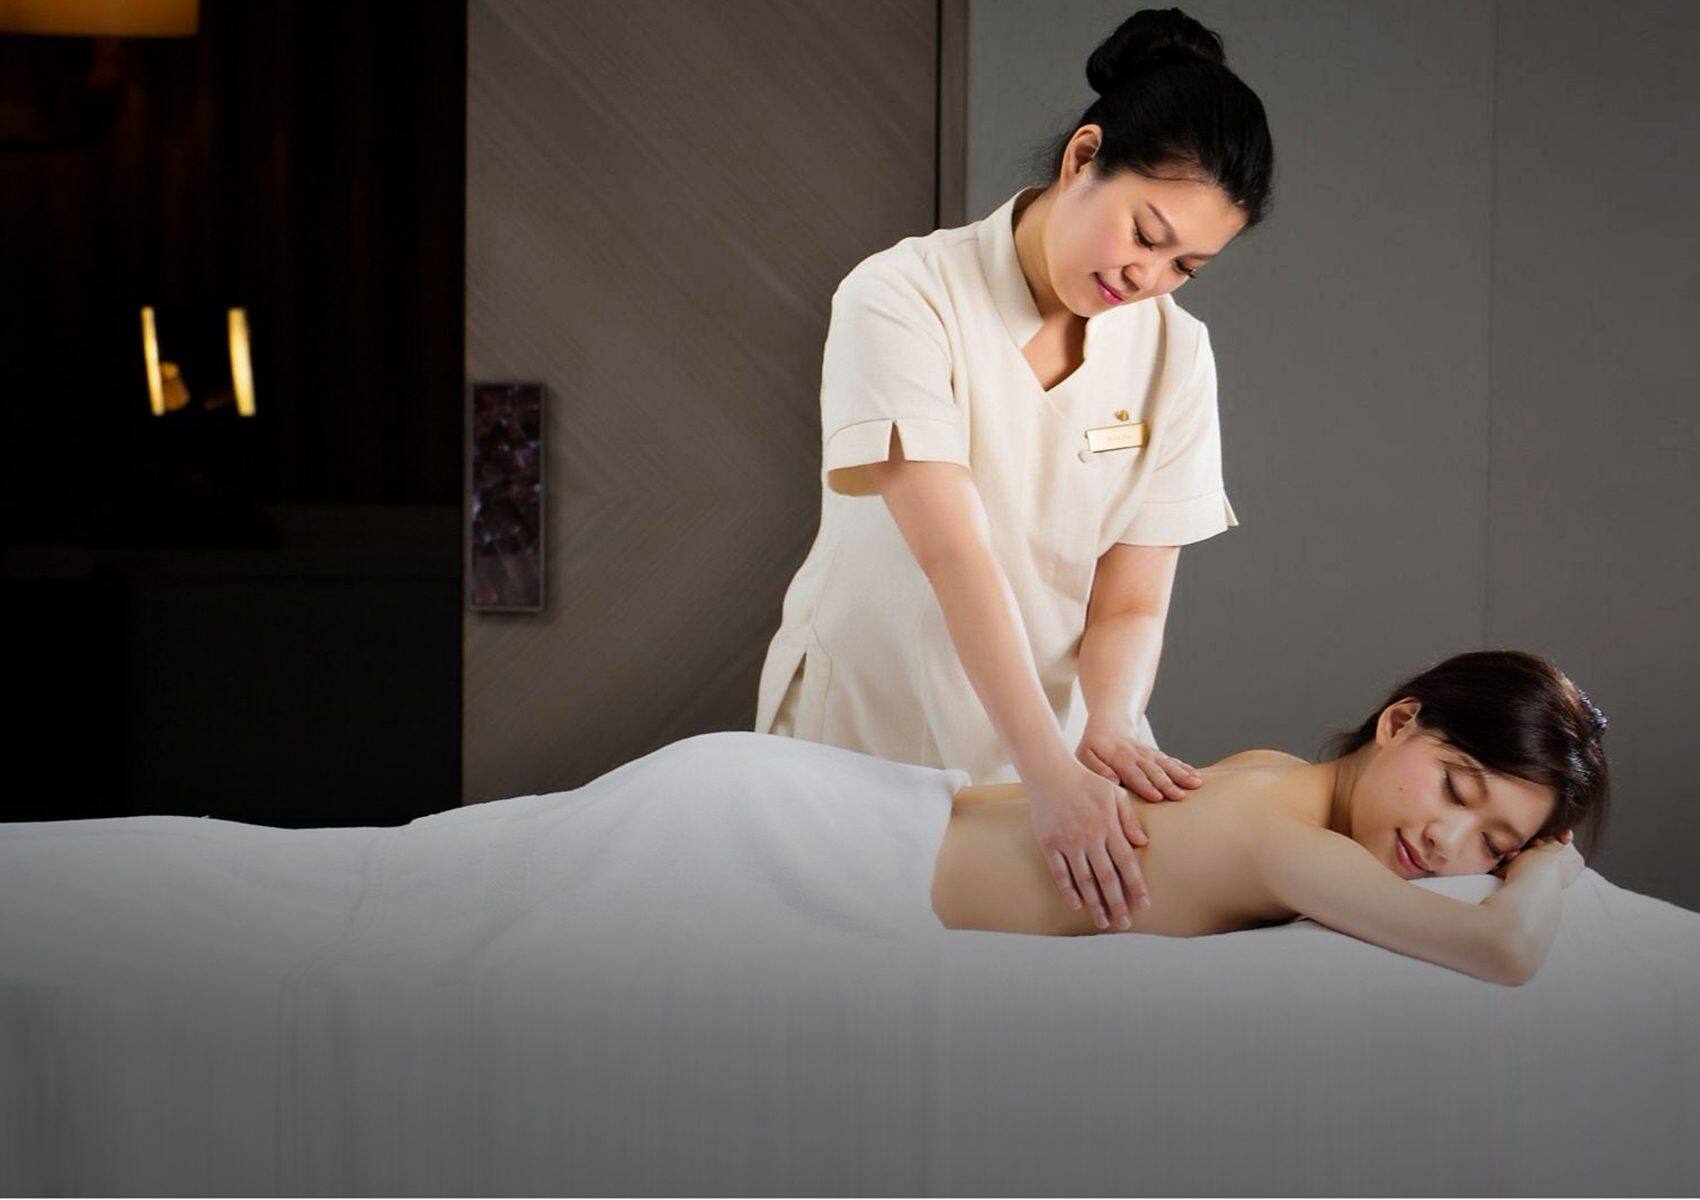 Taiwan Soapy Massage Body To Body Massage Near Me - La Perla